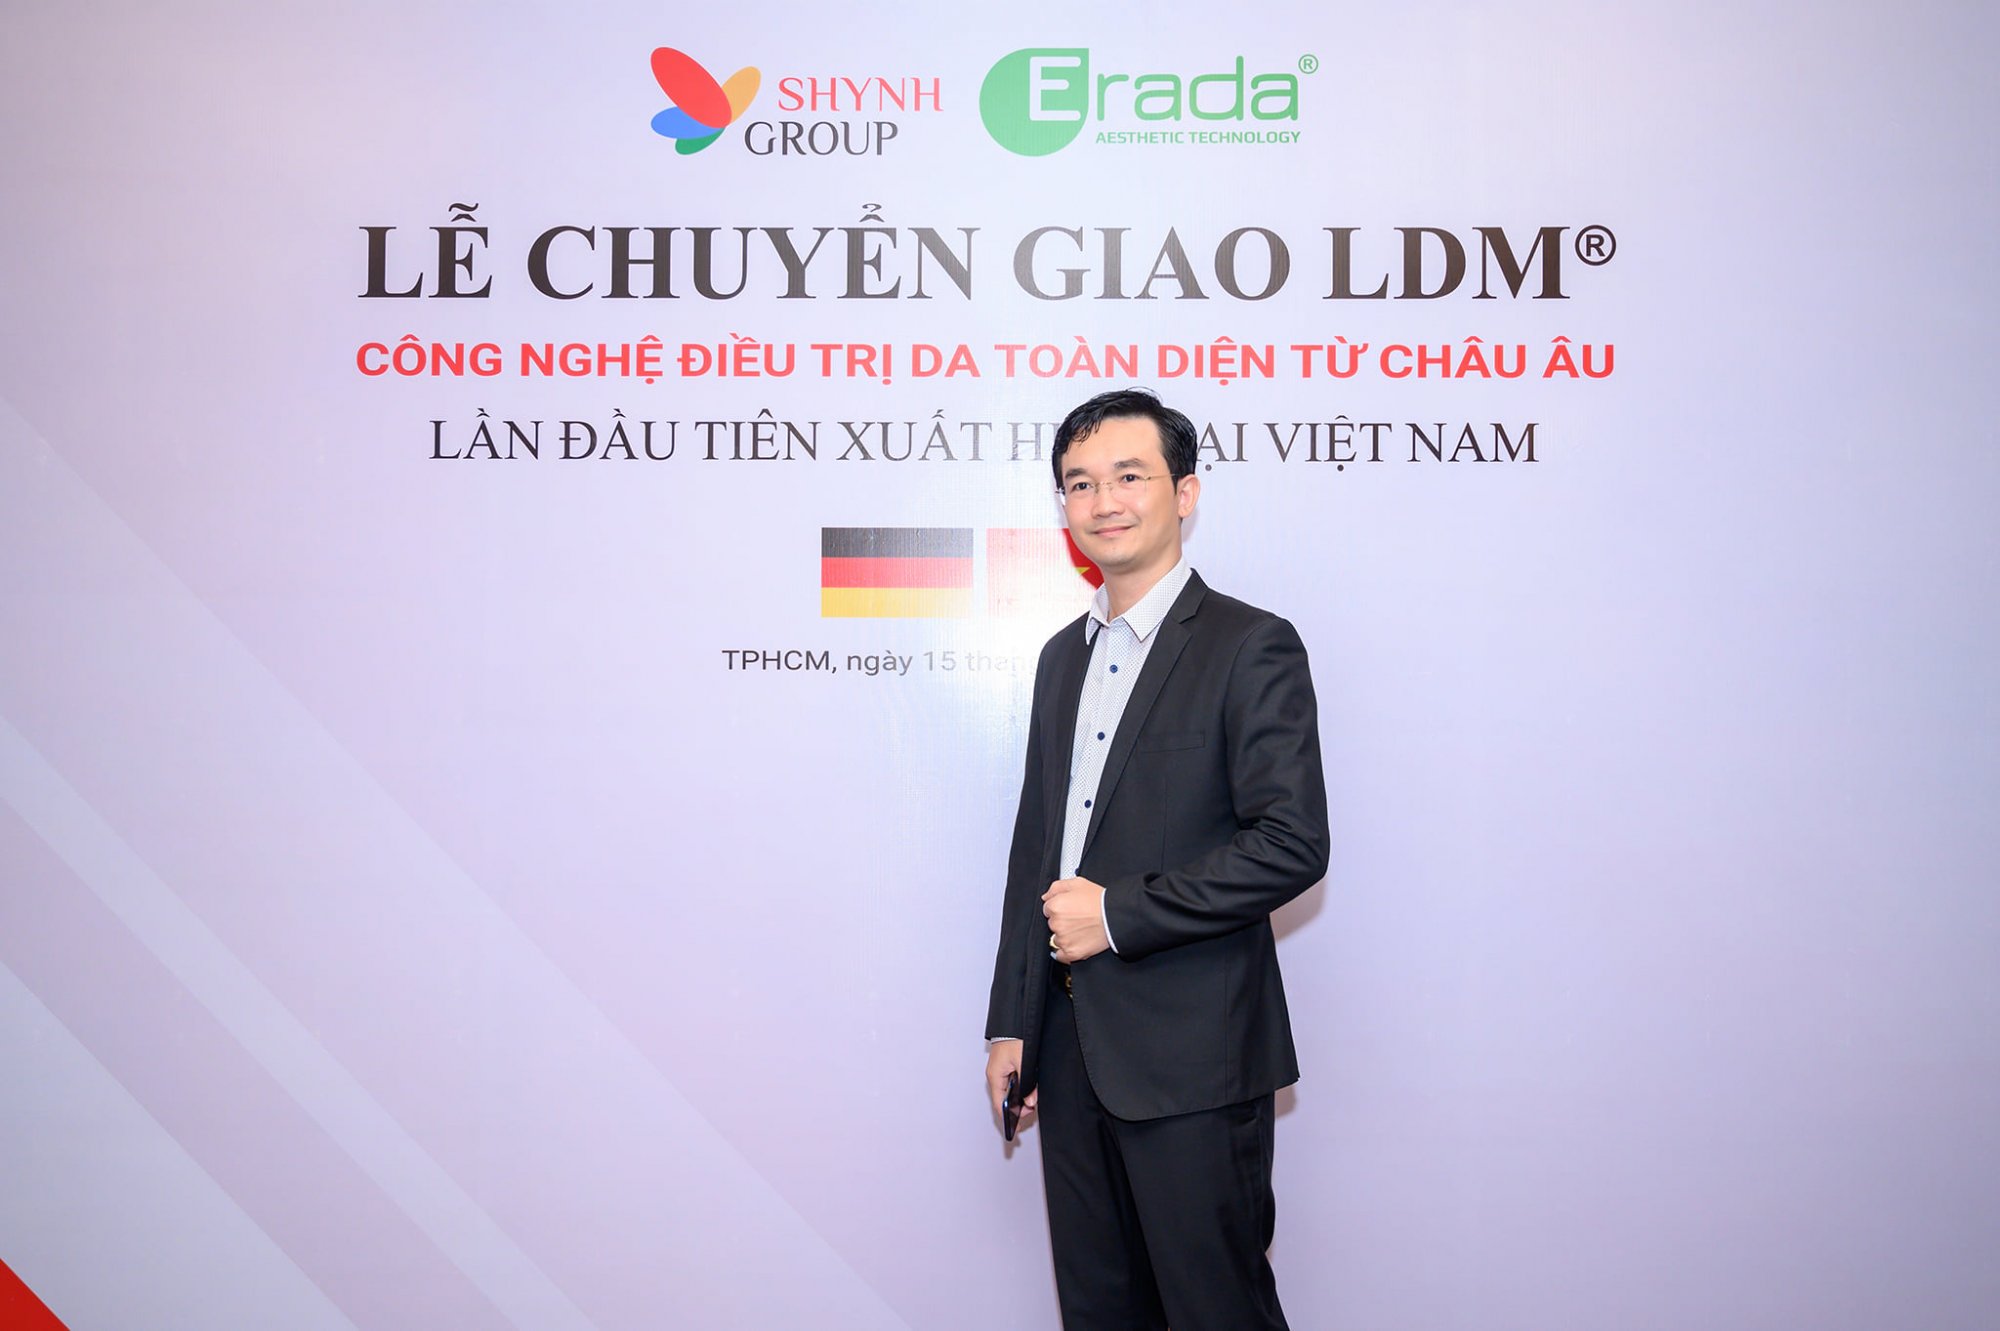 Lễ chuyển giao công nghệ LDM tại Shynh Group